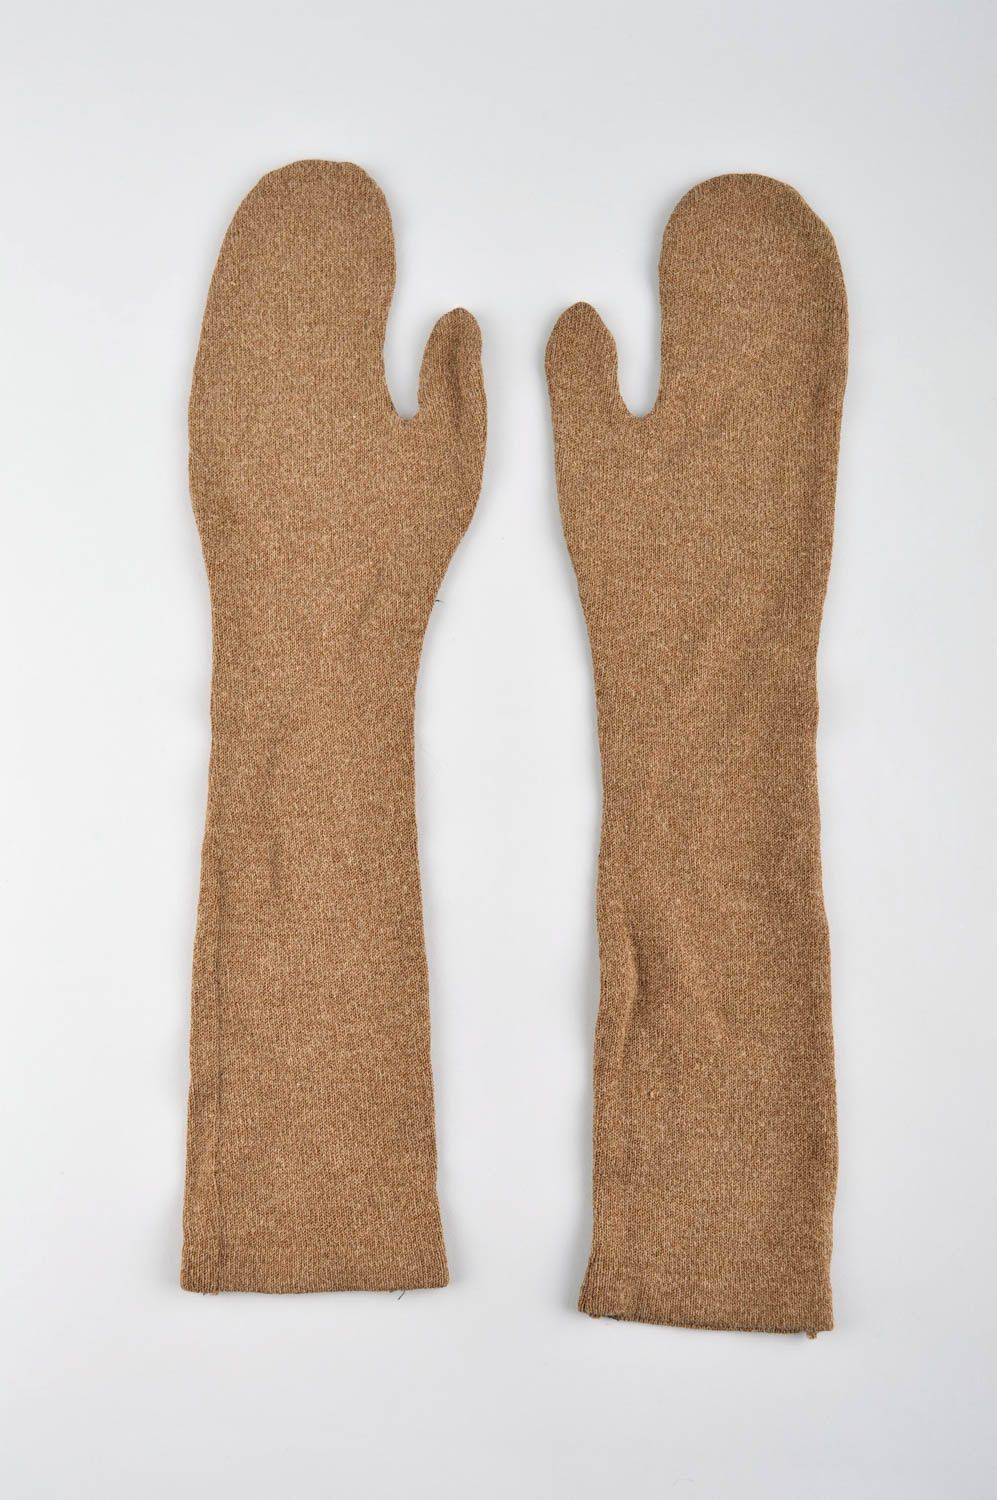 Moufles originales faites main Gants moufles longues marron Vêtement femme hiver photo 1